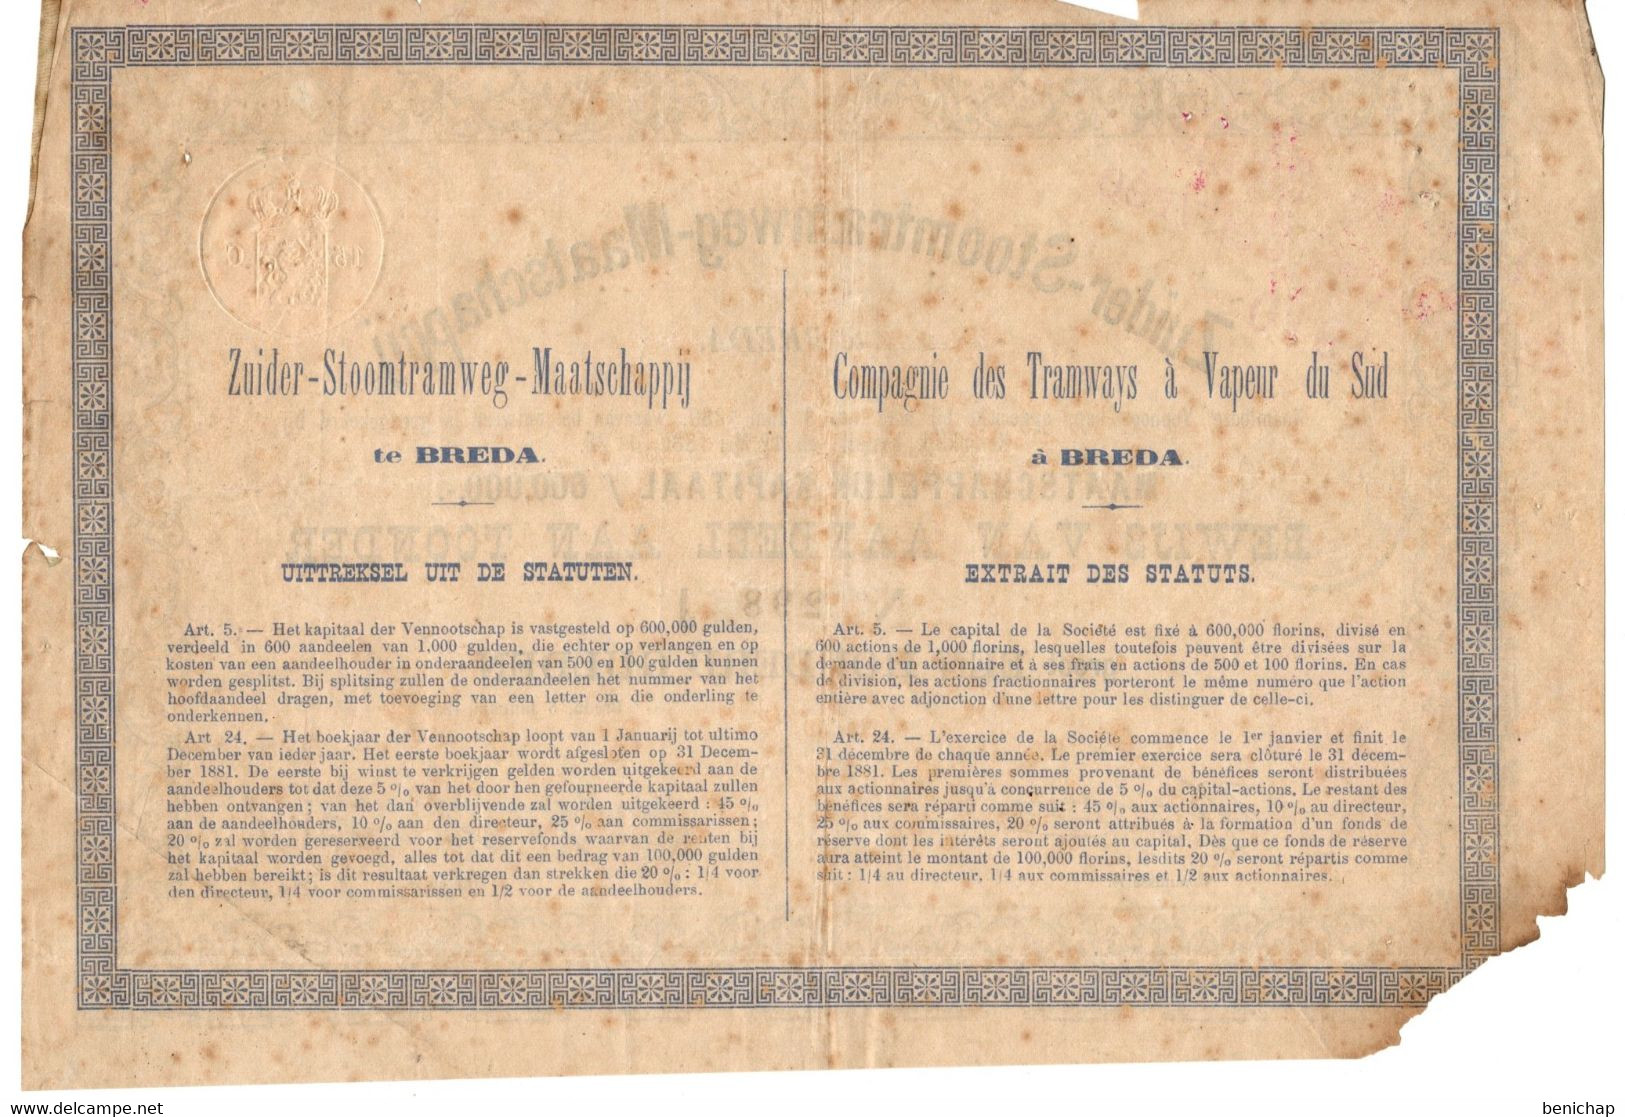 Zuider-Stoomtramweg-Maatschappij Te Breda - Bewijs Van Aandeel Aan Toonder Groot Een Honderd Gulden - 5 Januarij 1881 - Bank & Insurance